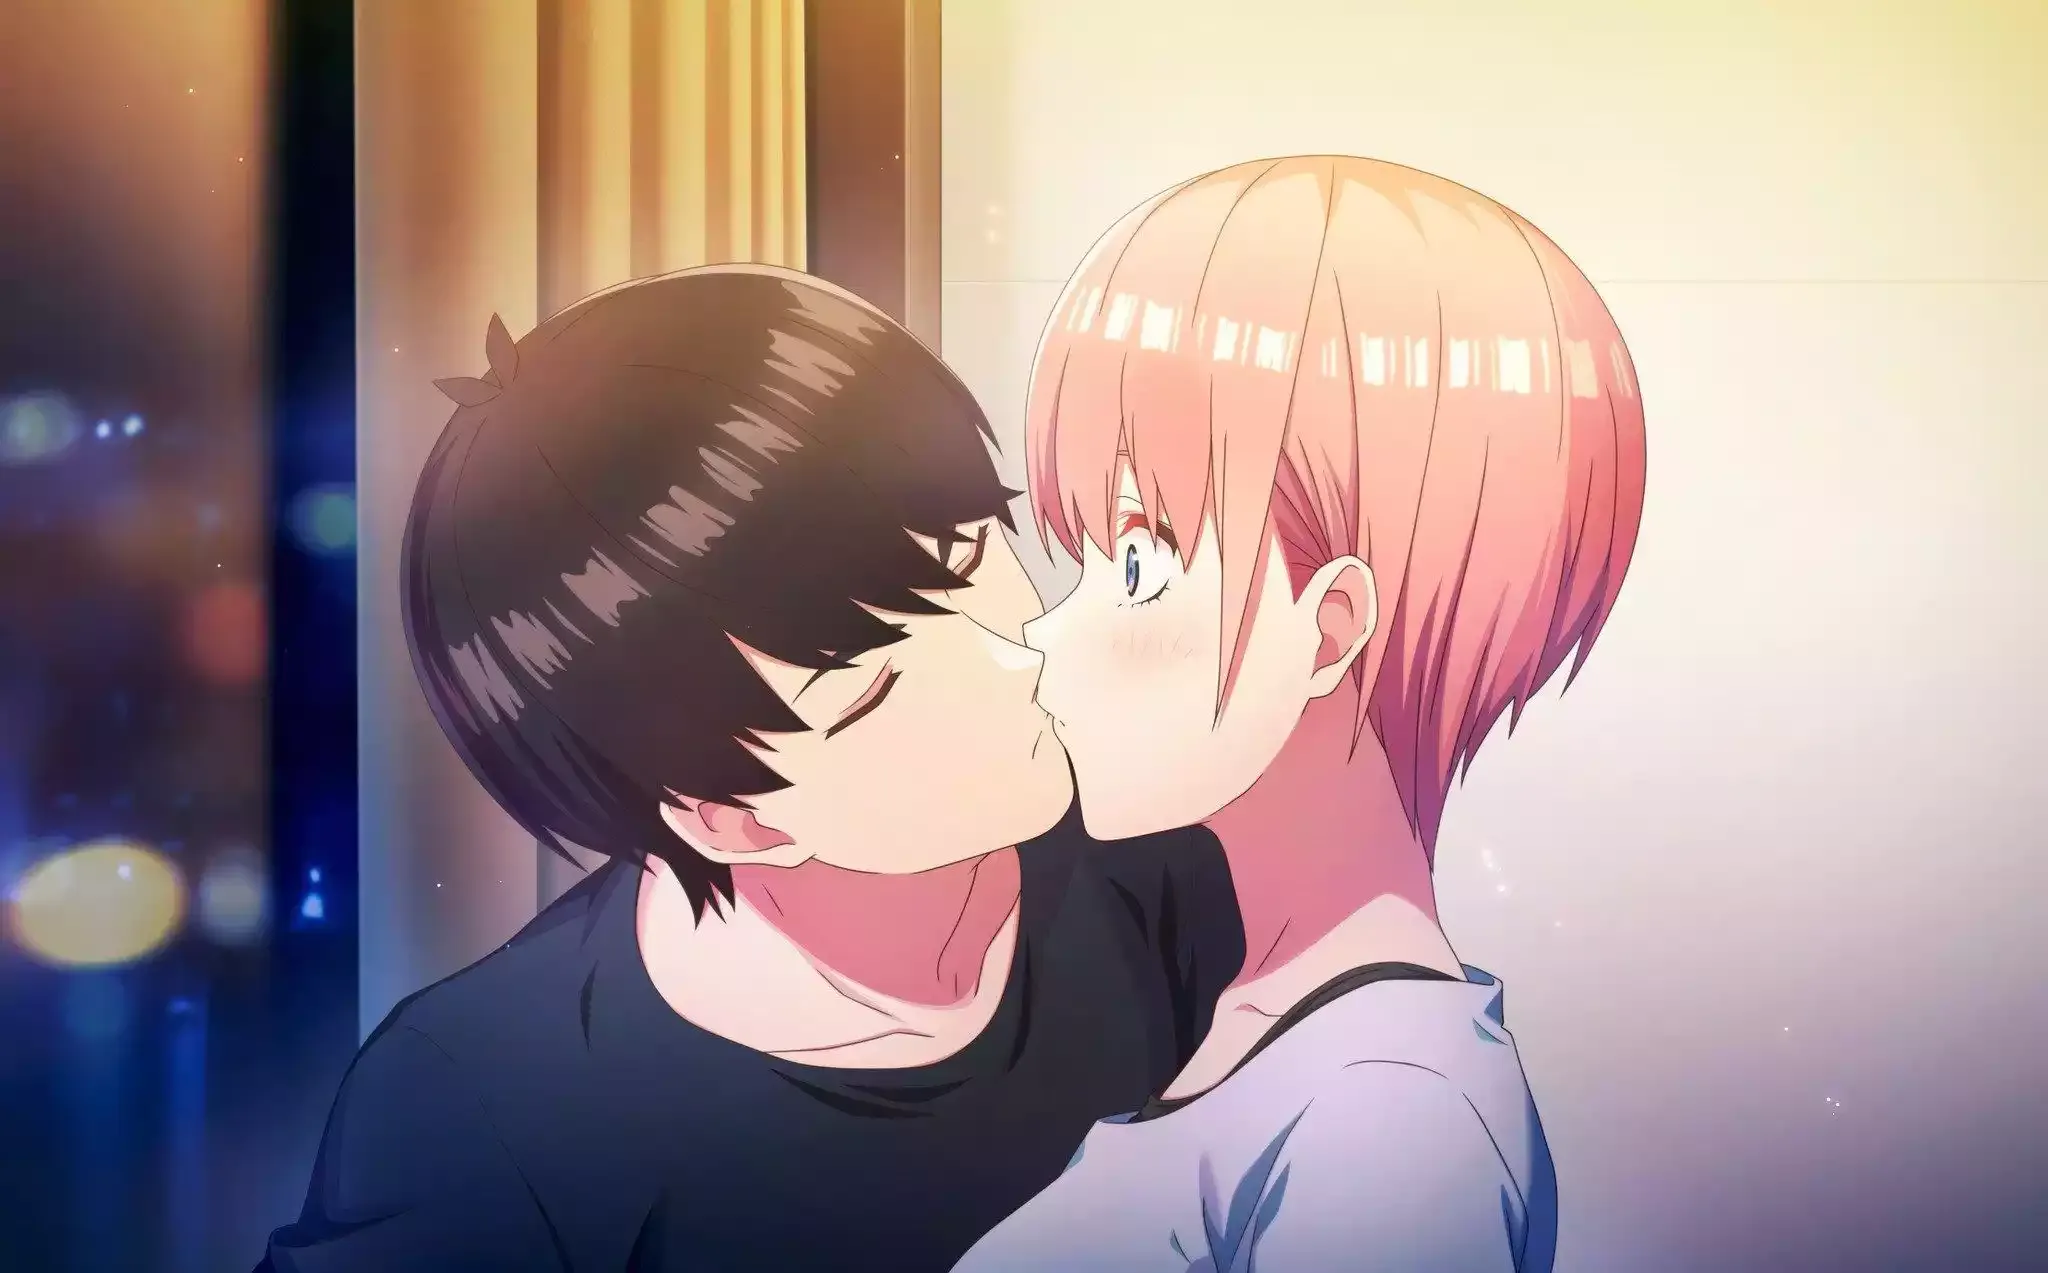 A Miku beija o Futaro pela última vez 😱😍 (PT-BR 🇧🇷) The Quintessential  Quintuplets 